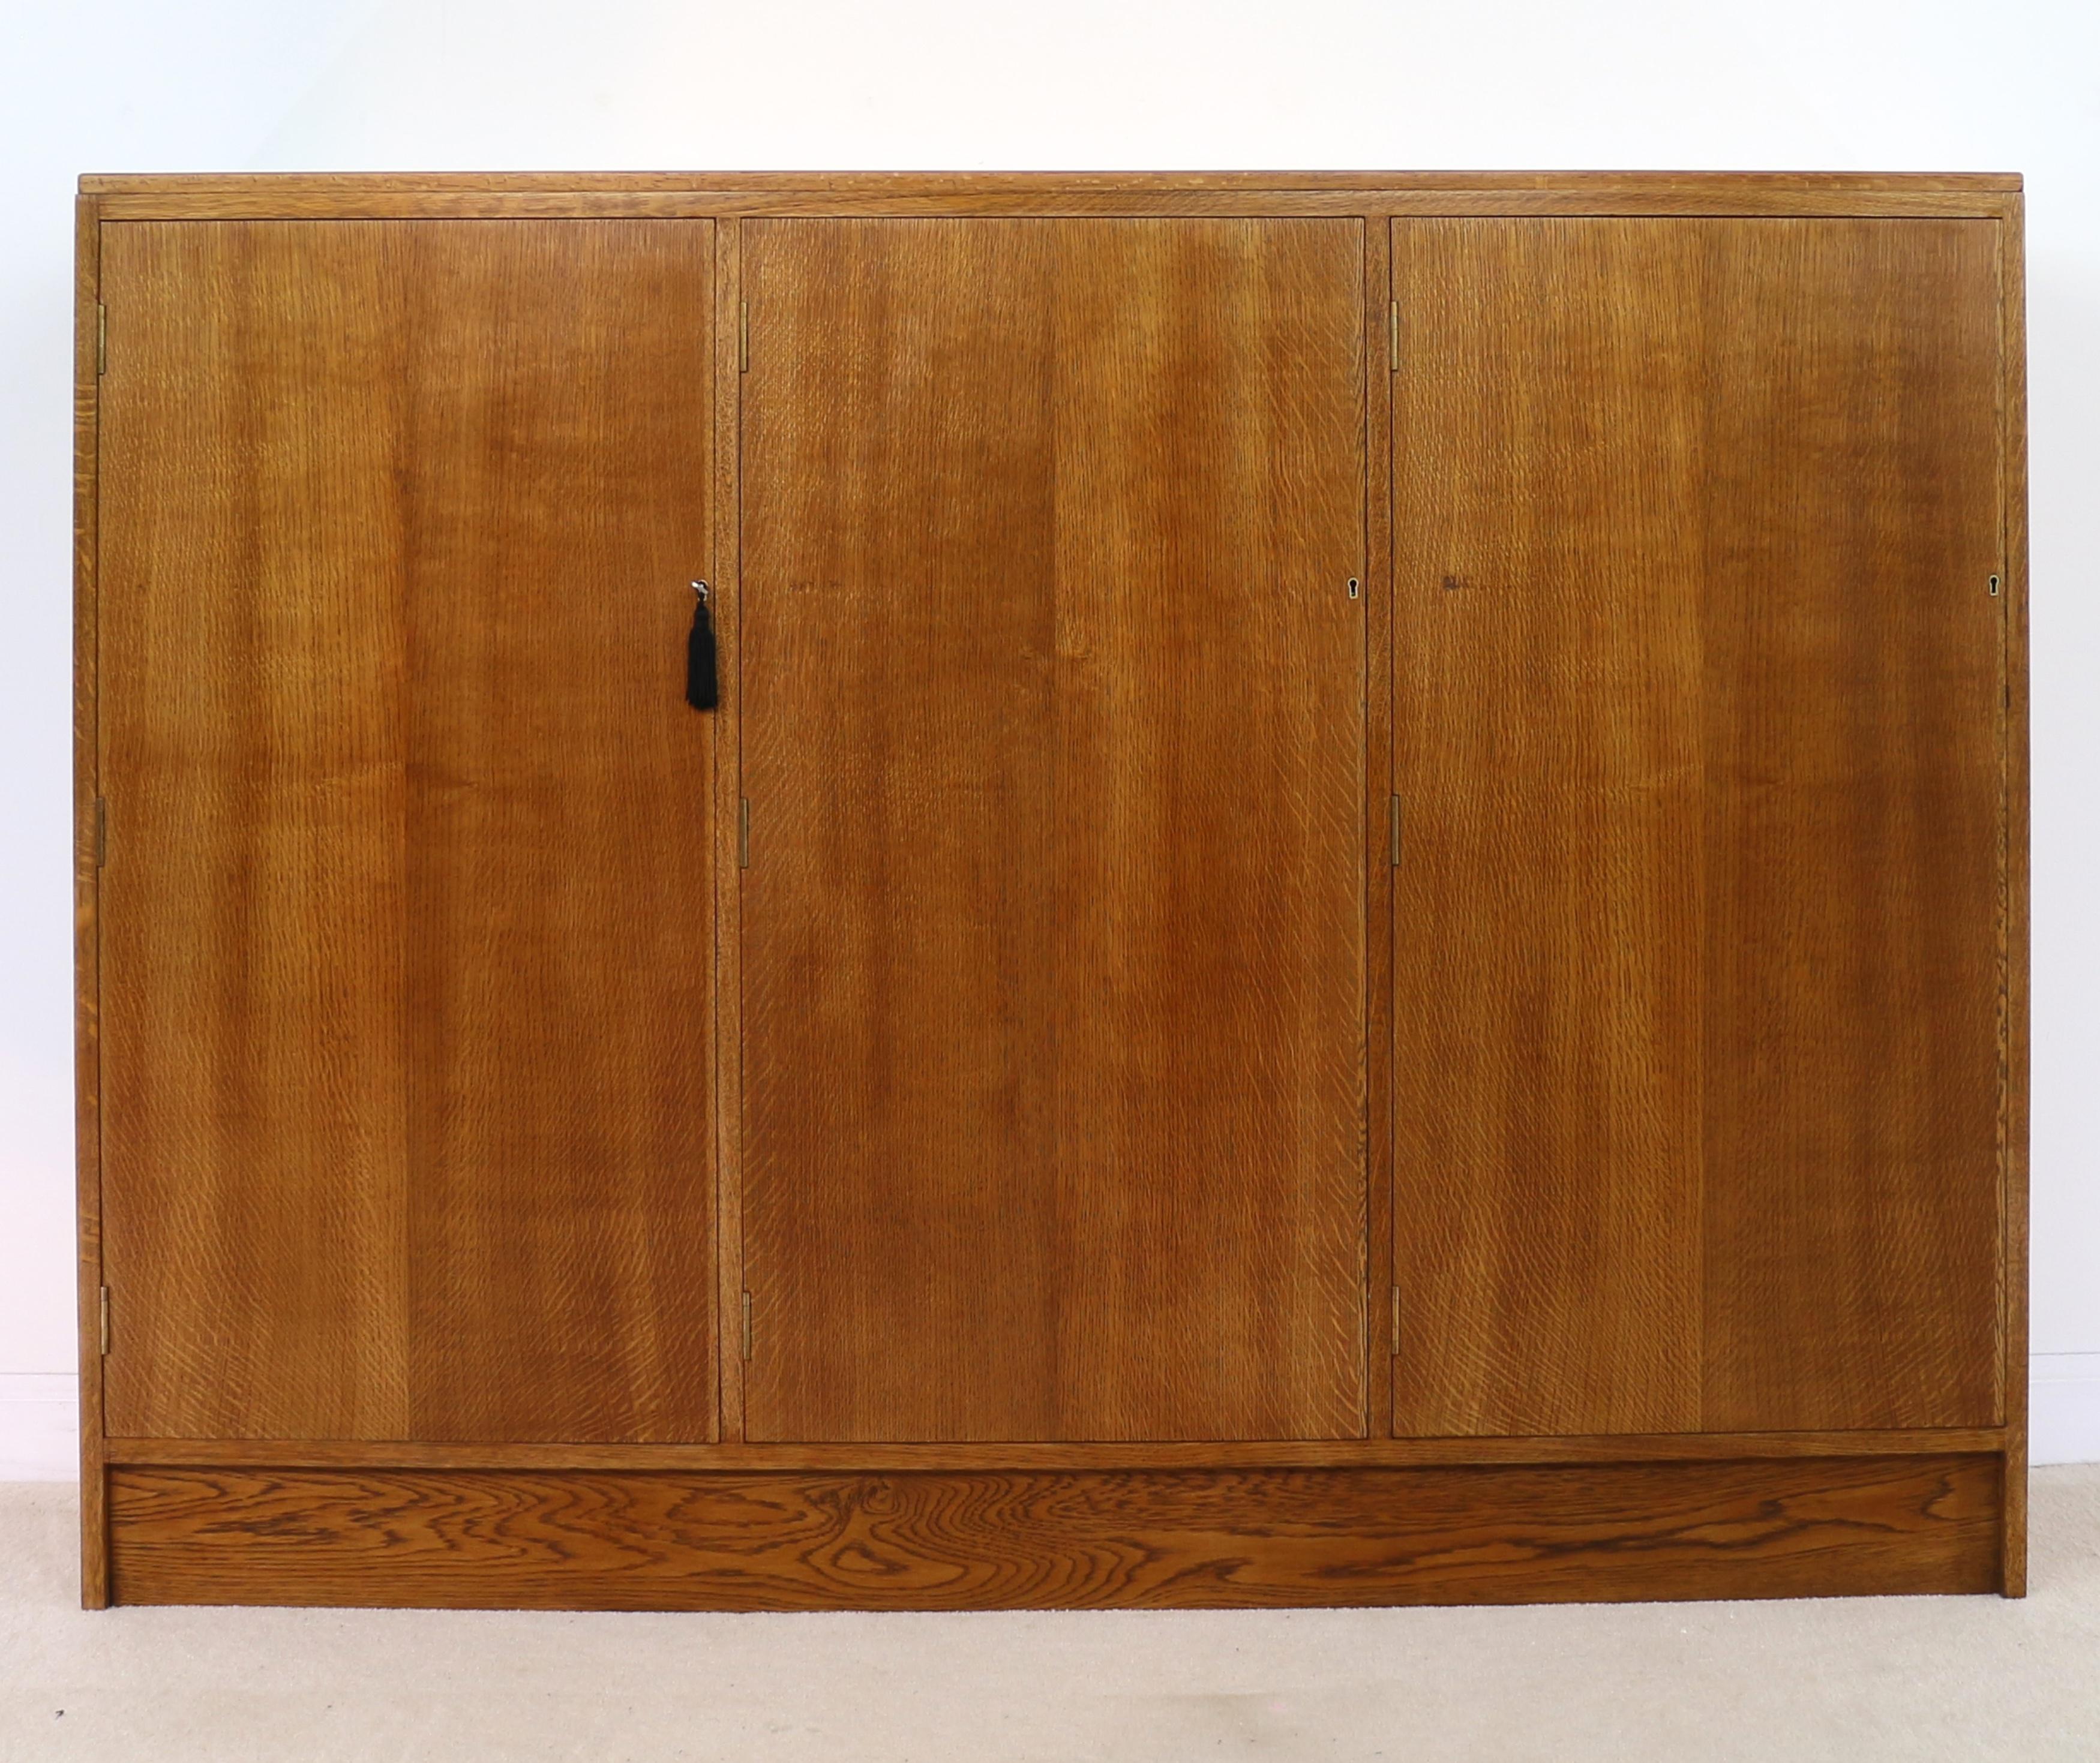 Ein großer Sammlerschrank aus Eichenholz mit Mahagoni-Interieur von guter Qualität, datiert auf ca. 1930. Mit drei verschließbaren Türen in voller Länge, hinter denen sich insgesamt 36 Schubladen mit eingelassenen Messinggriffen im Campaigner-Stil